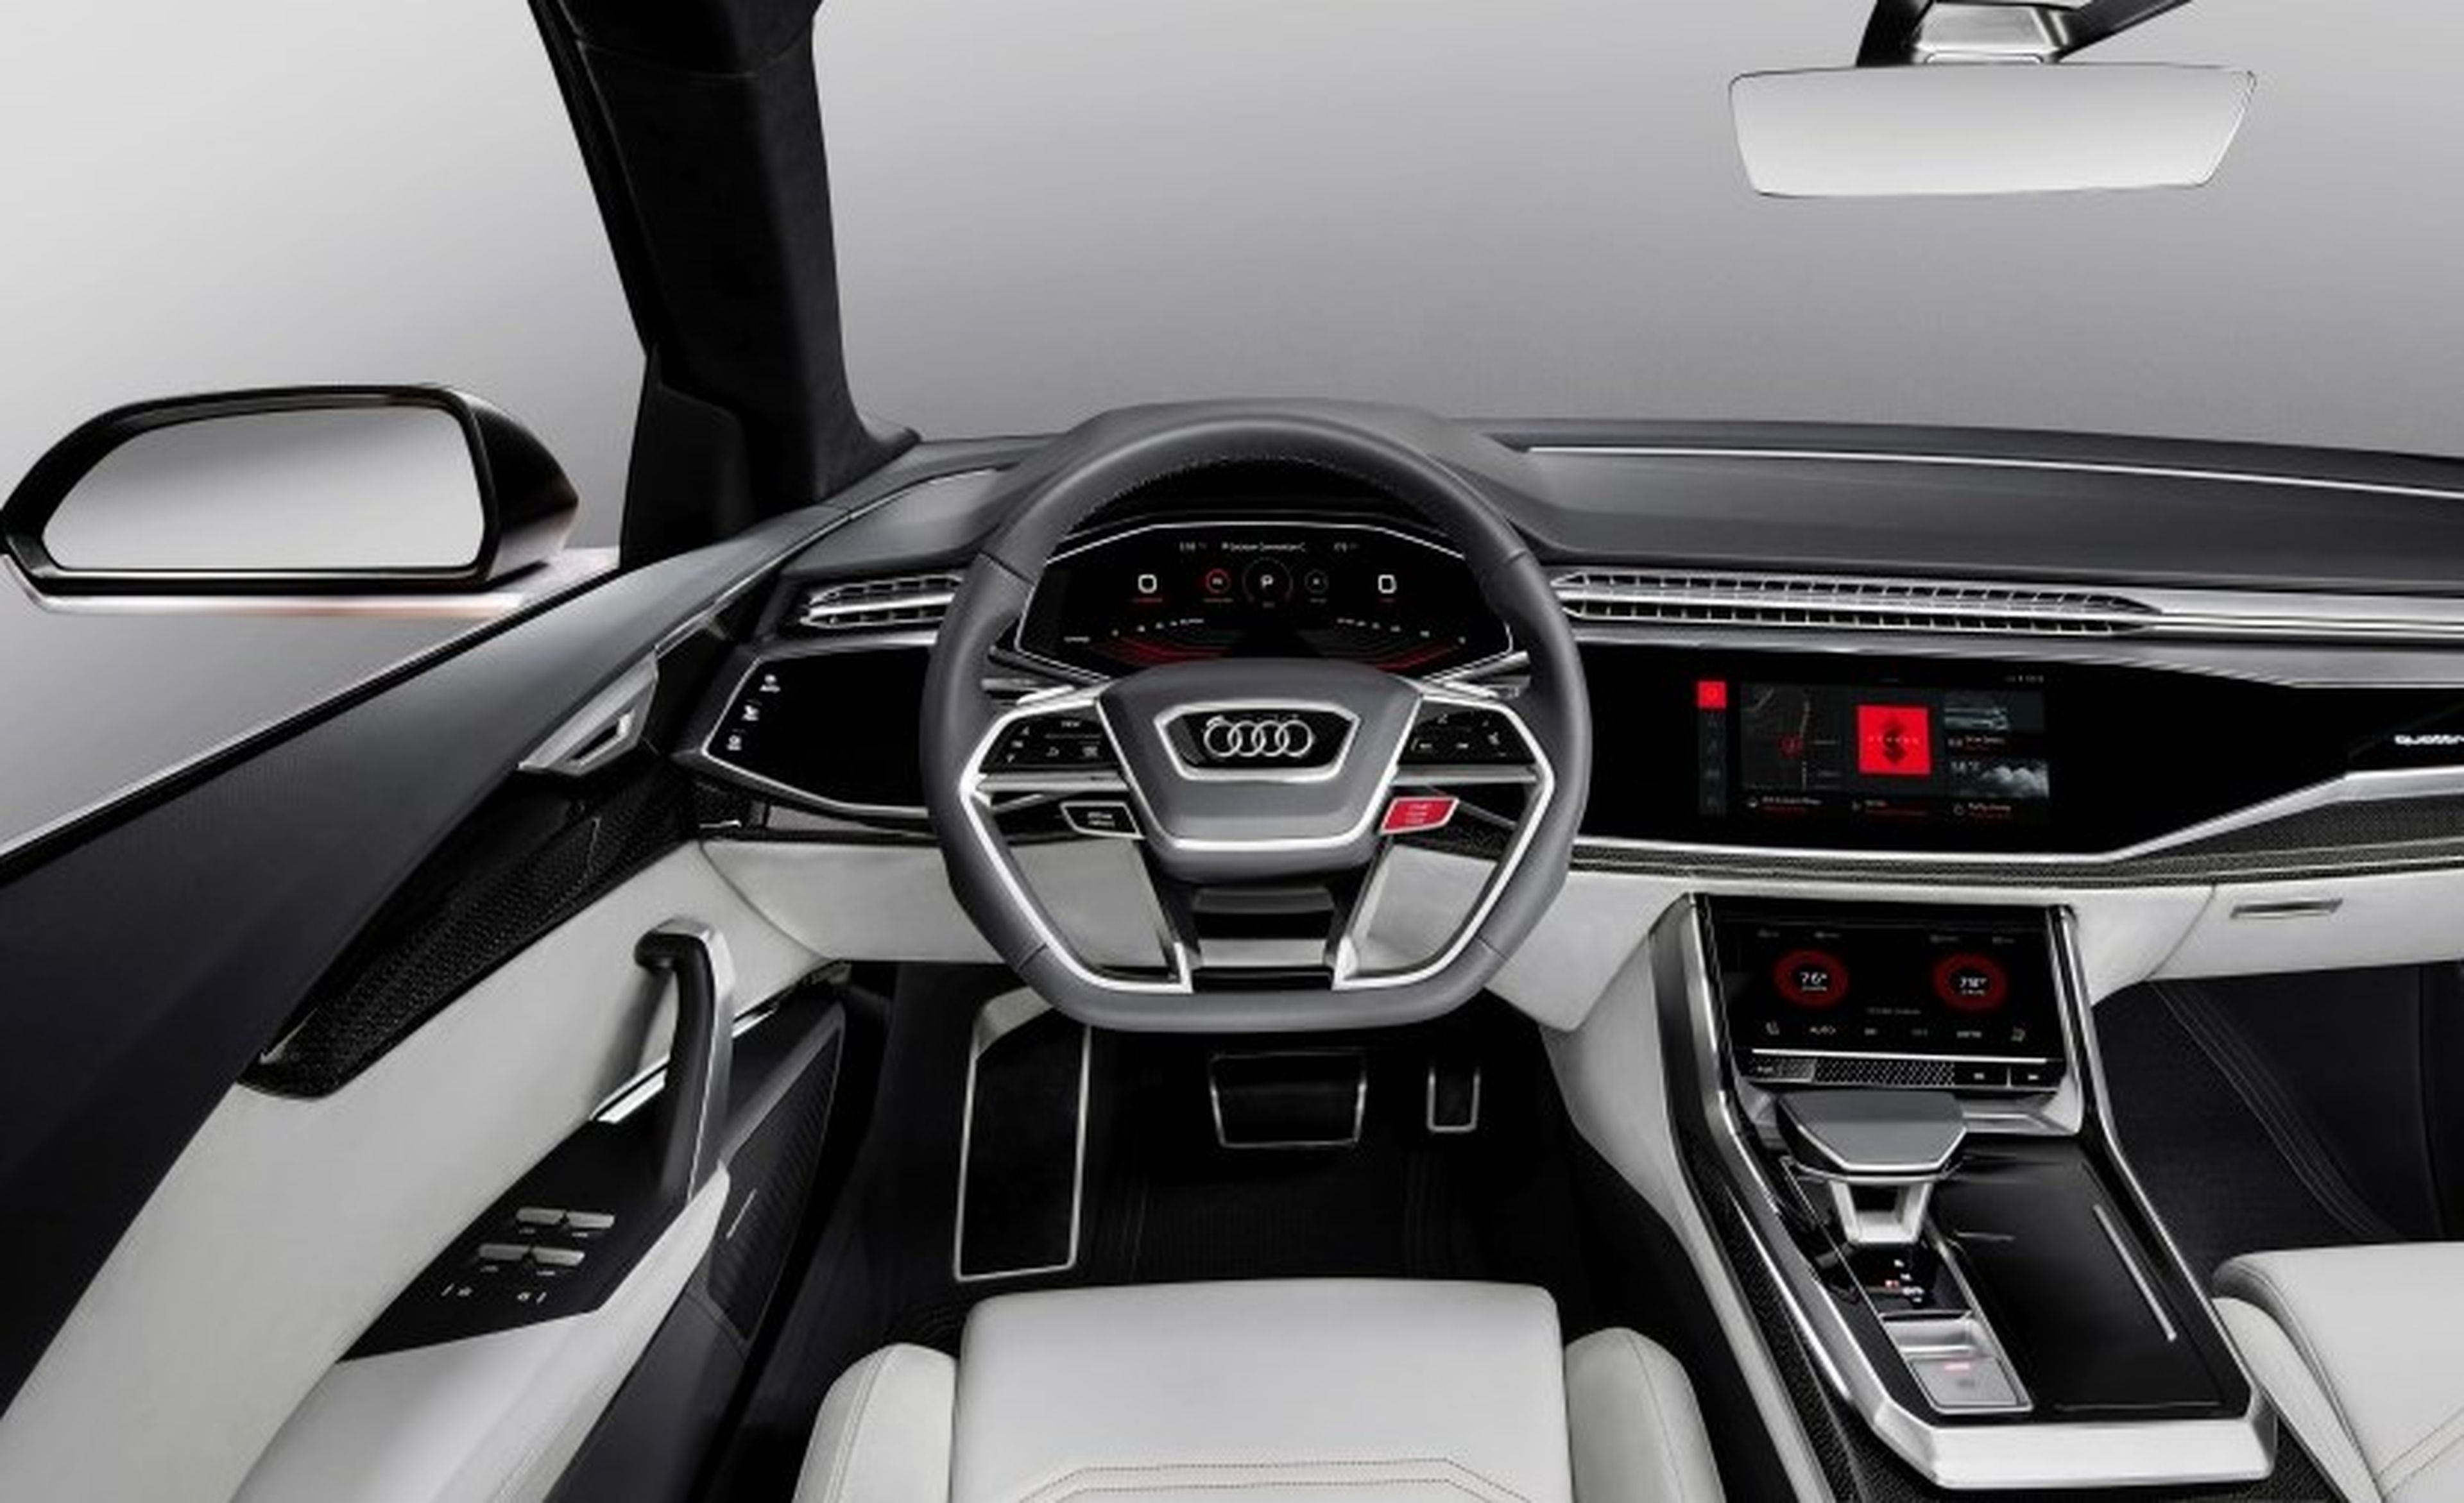 Audi muestra el sistema operativo Android del Audi Q8 sport